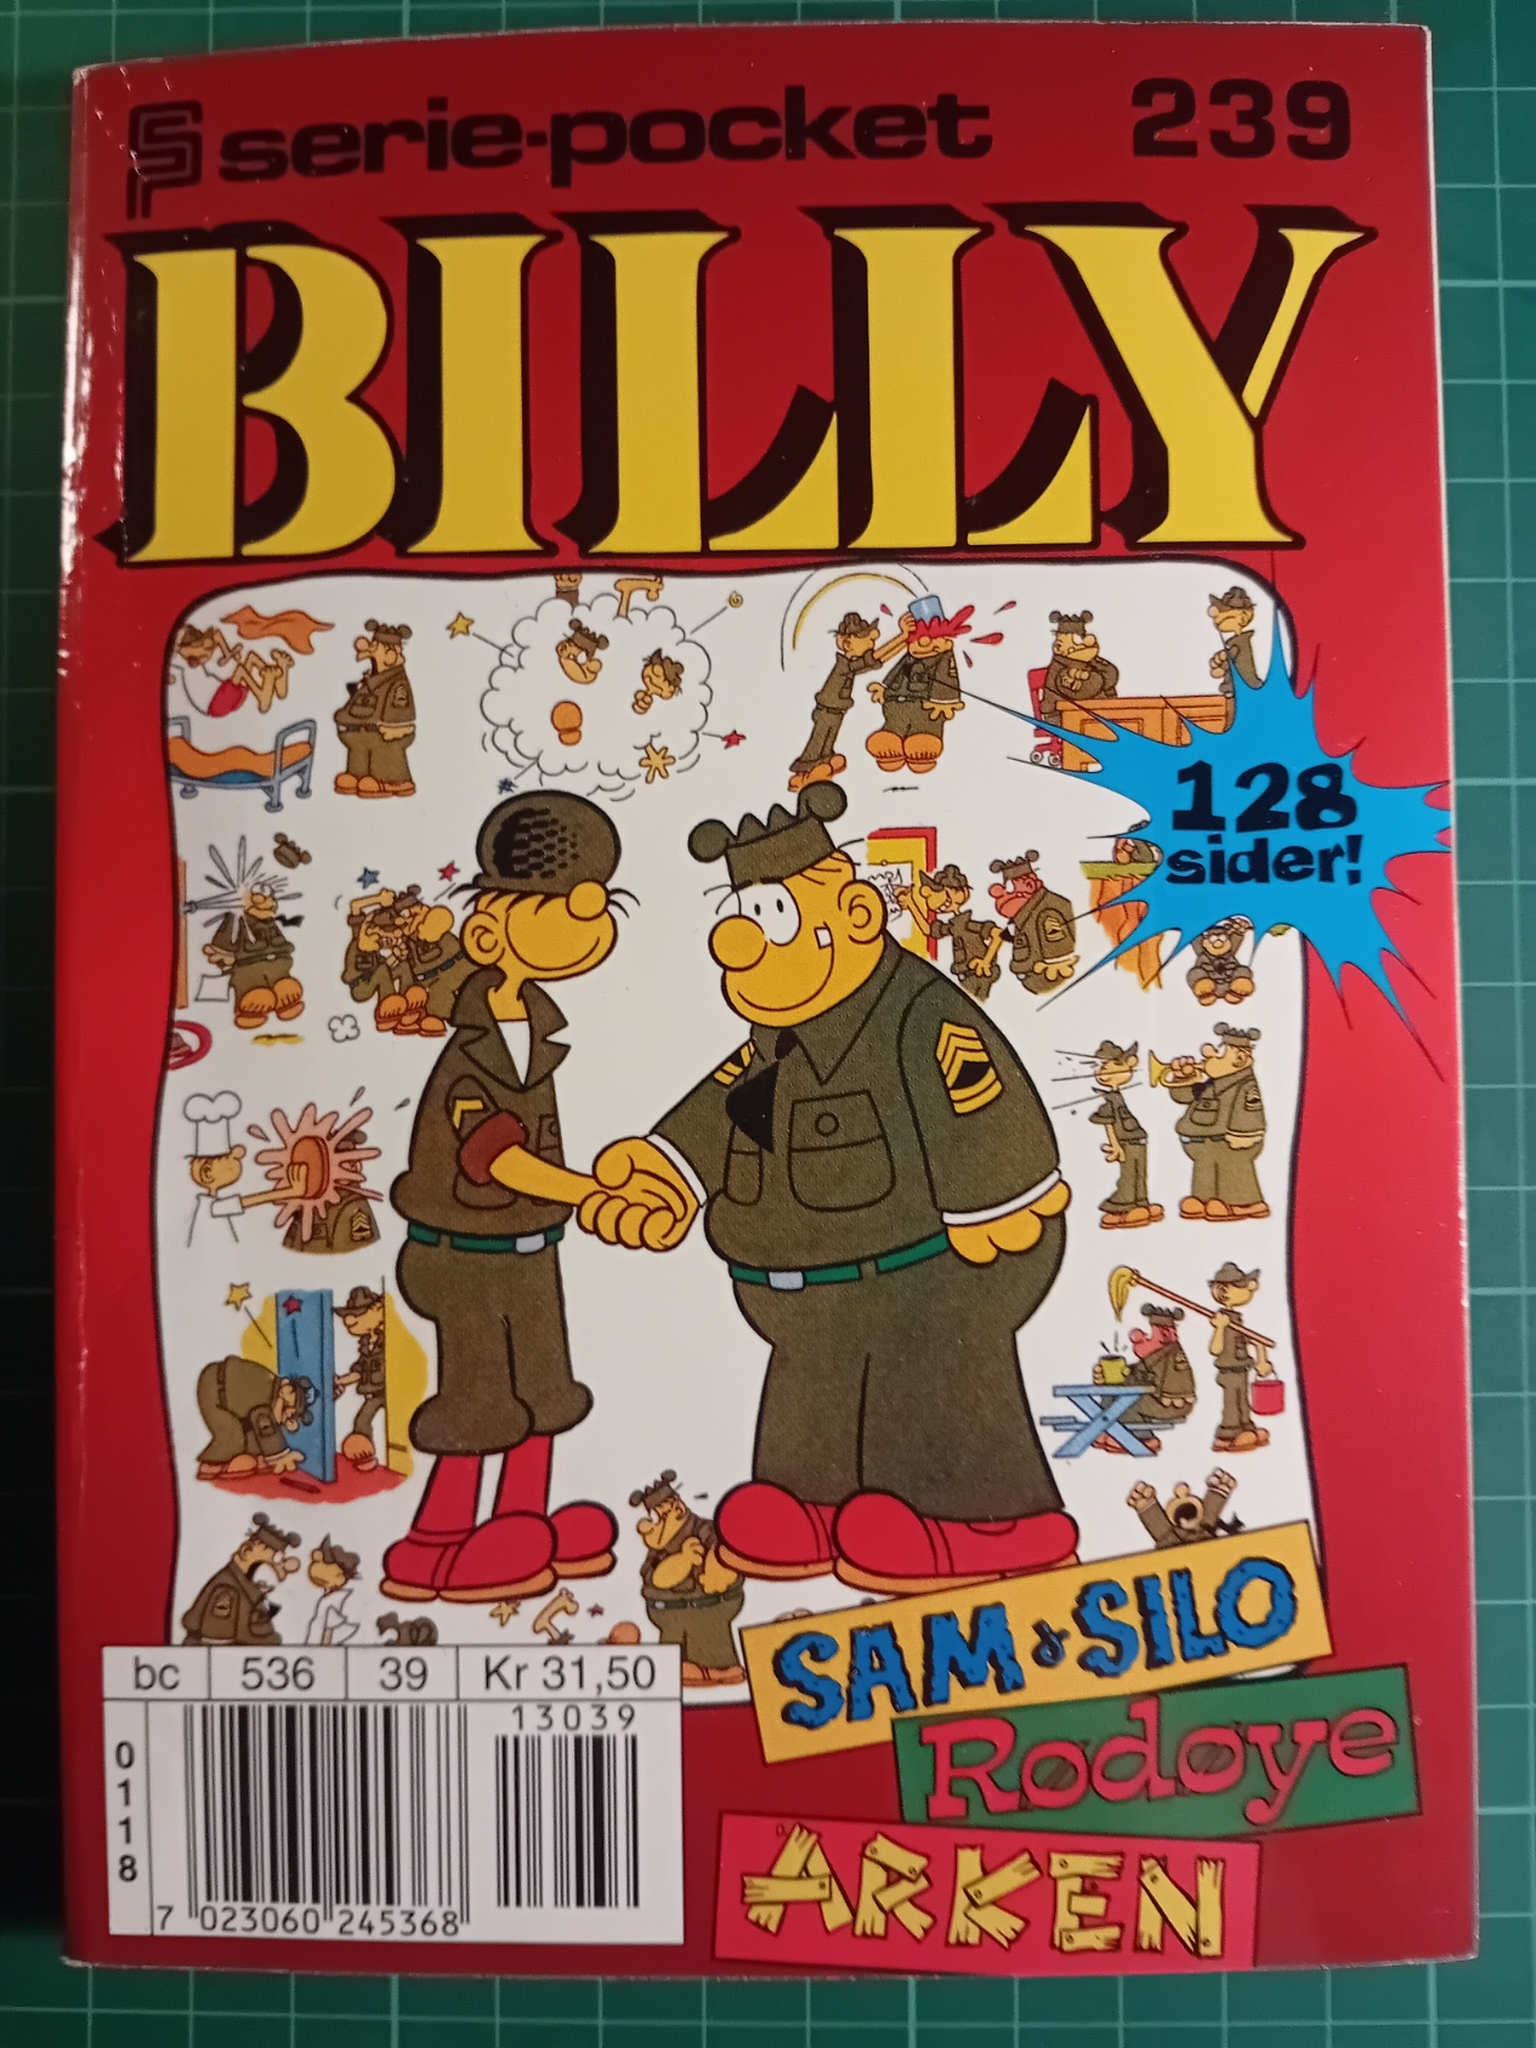 Serie-pocket 239 : Billy